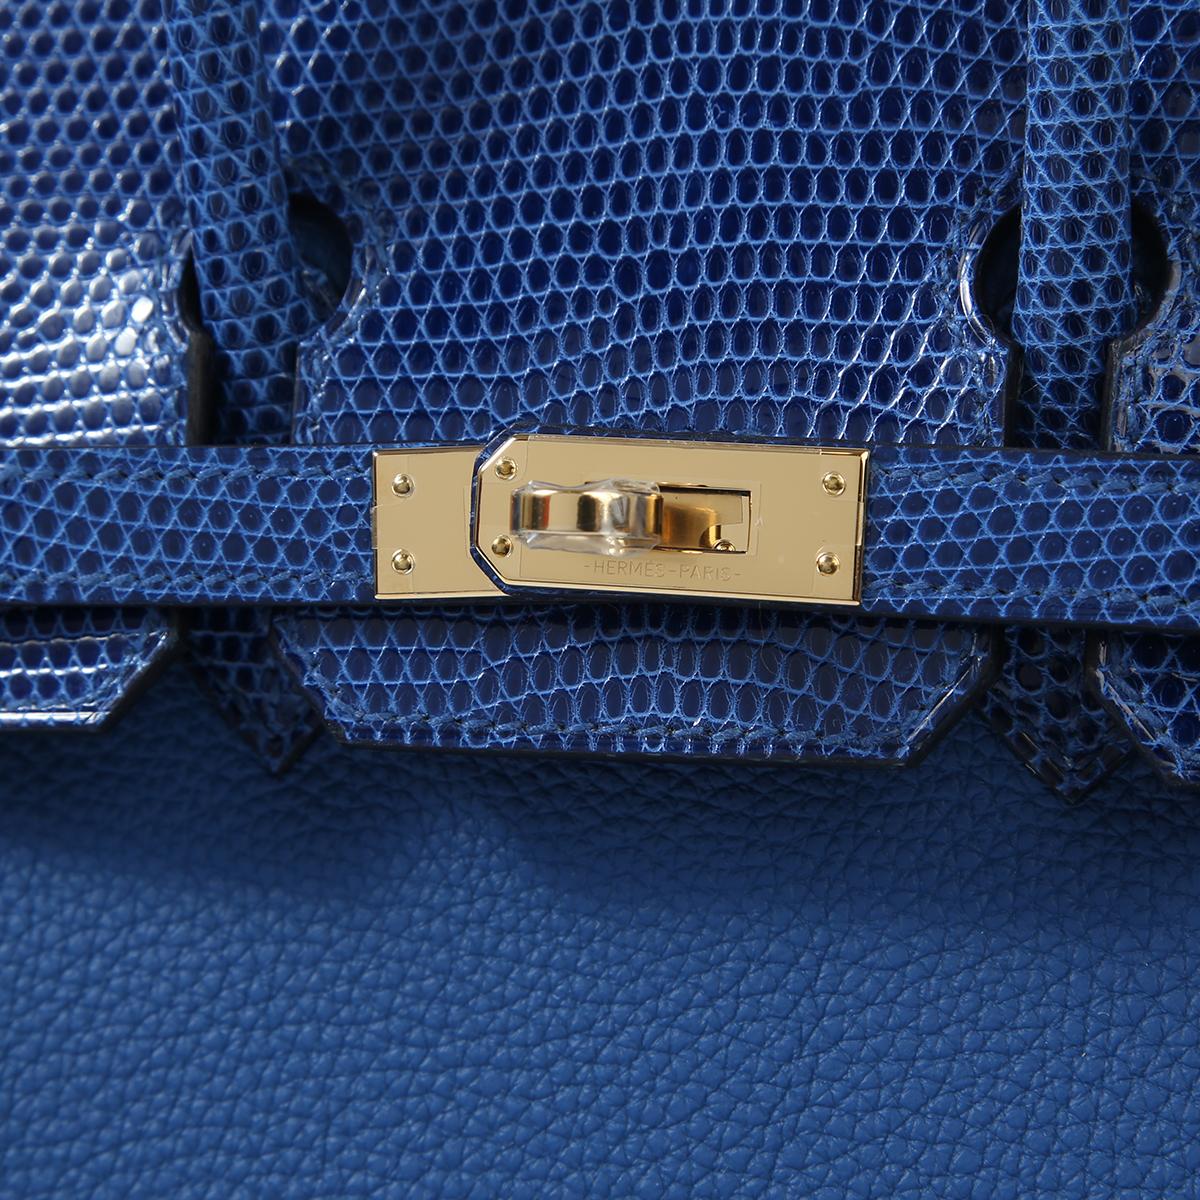 Royal Blue Hermes Birkin Bag - For Sale on 1stDibs